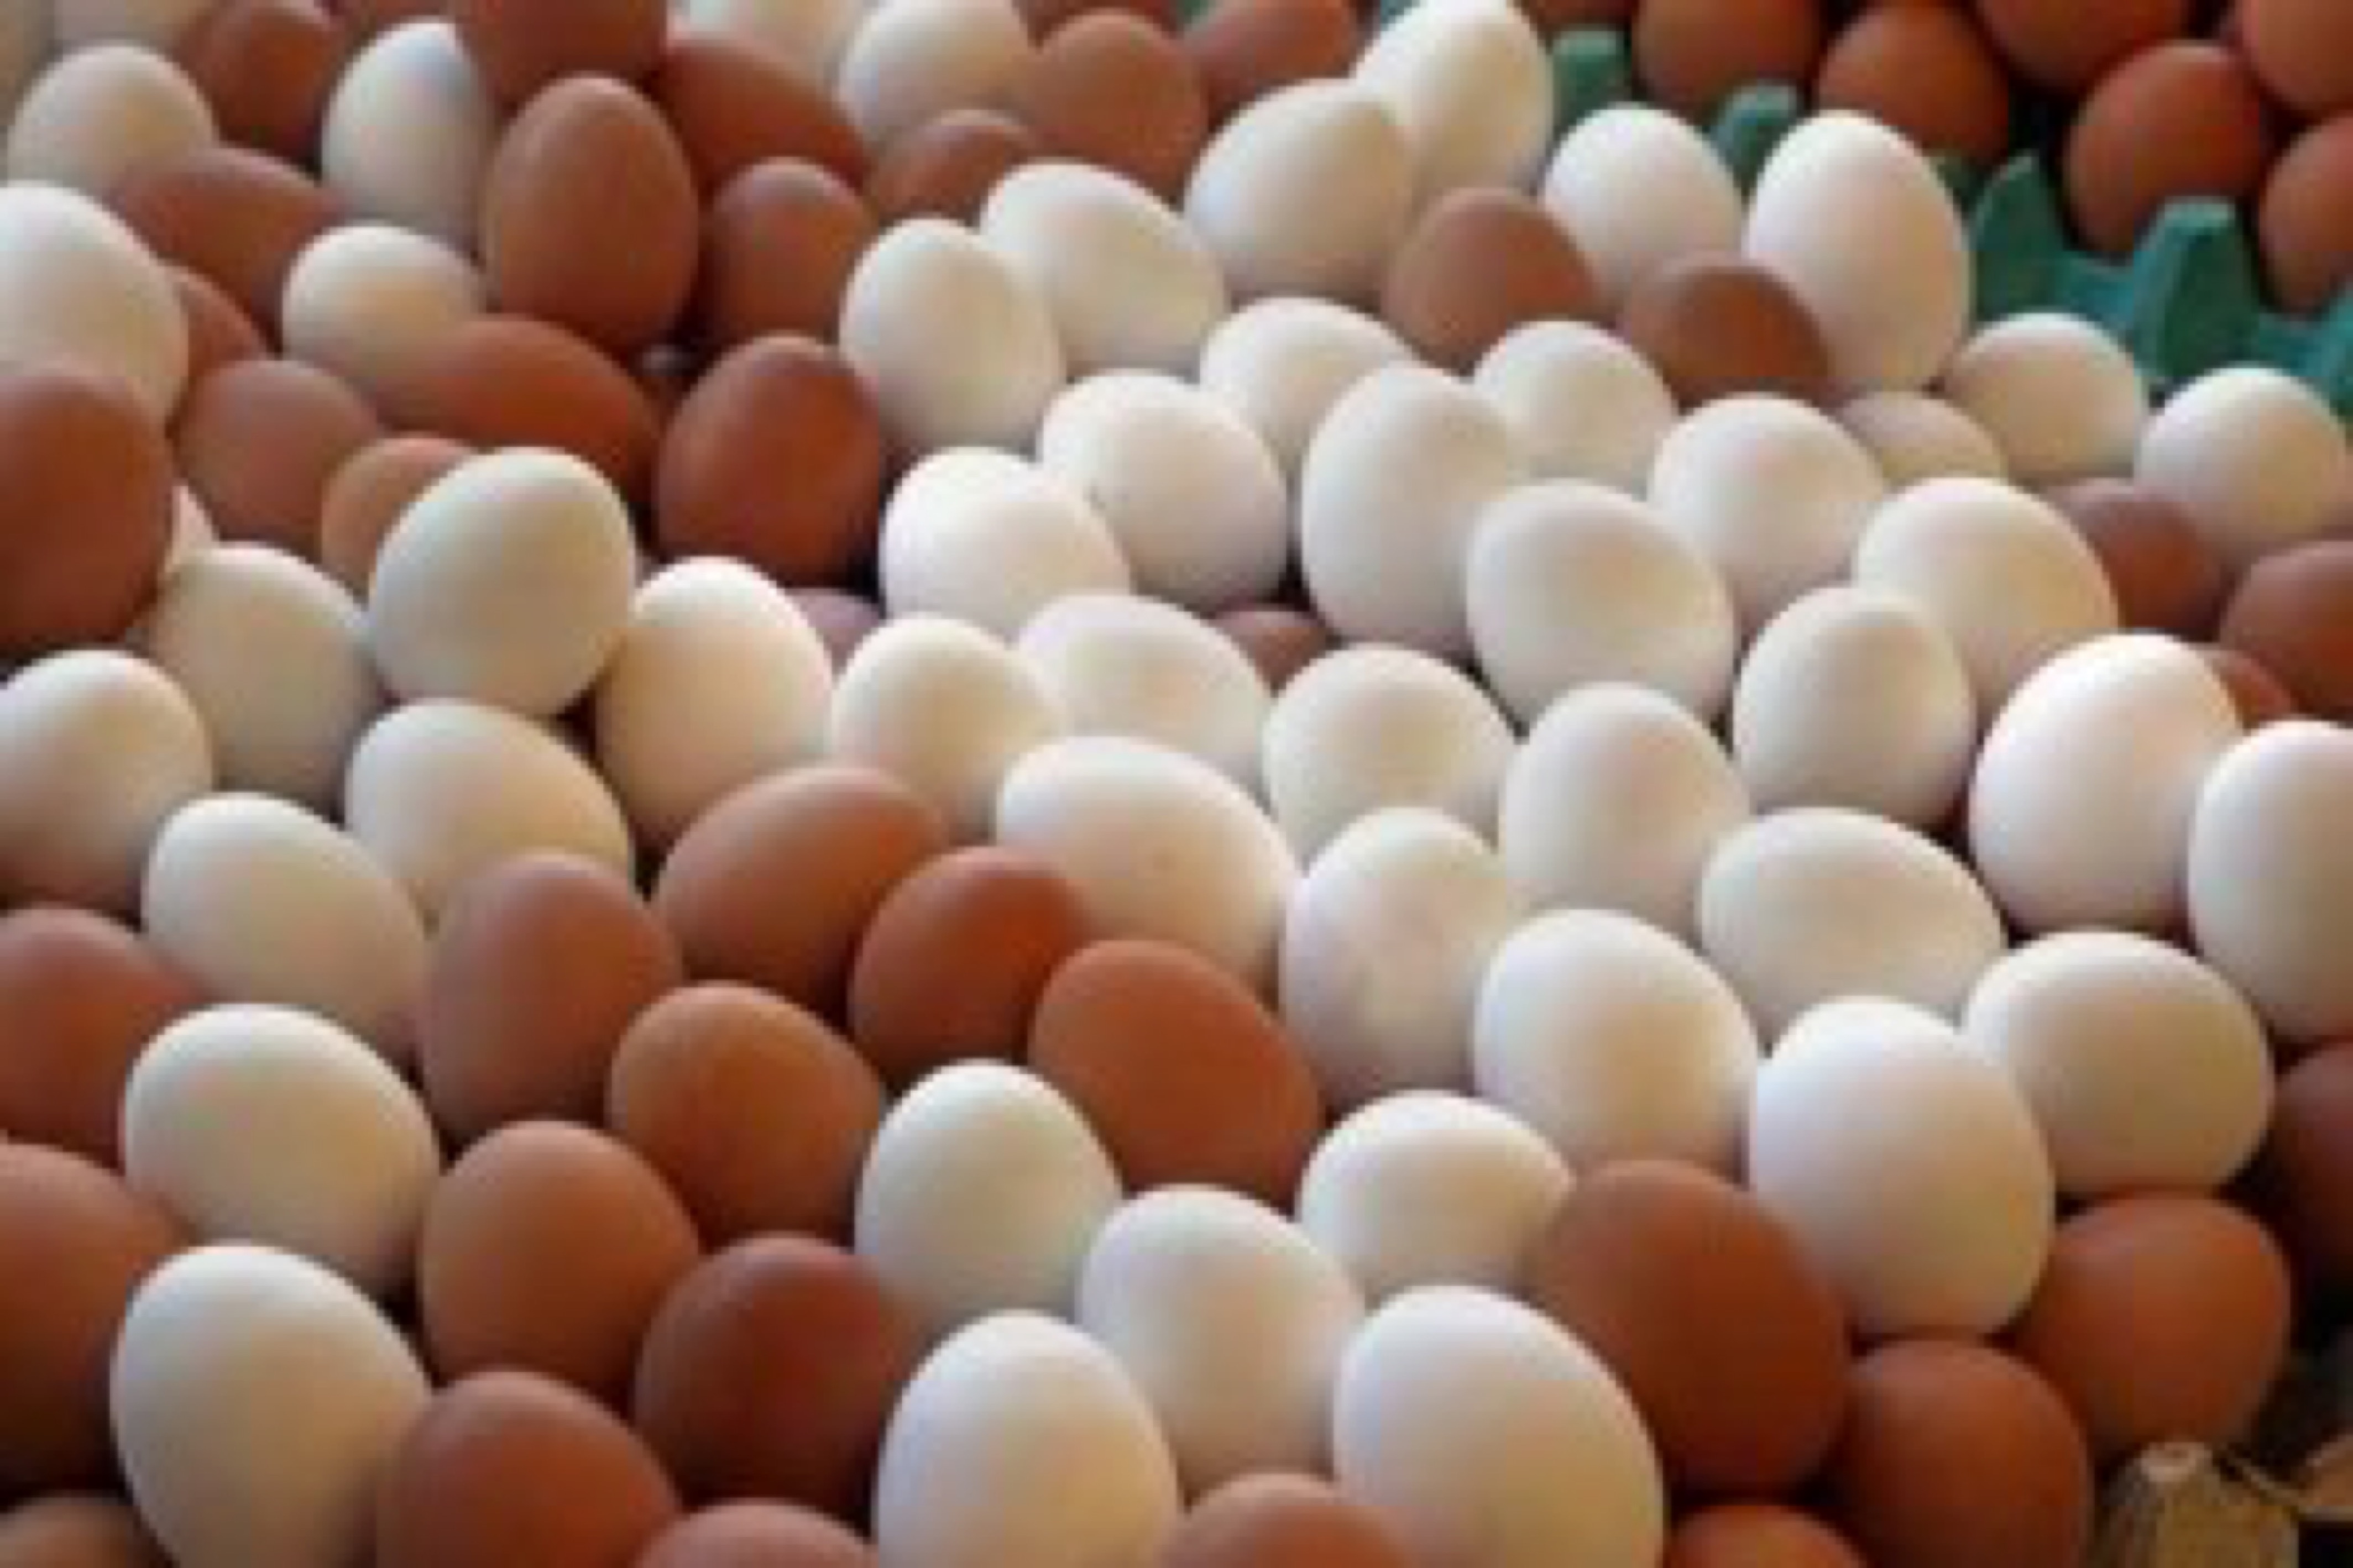 Chiken eggs